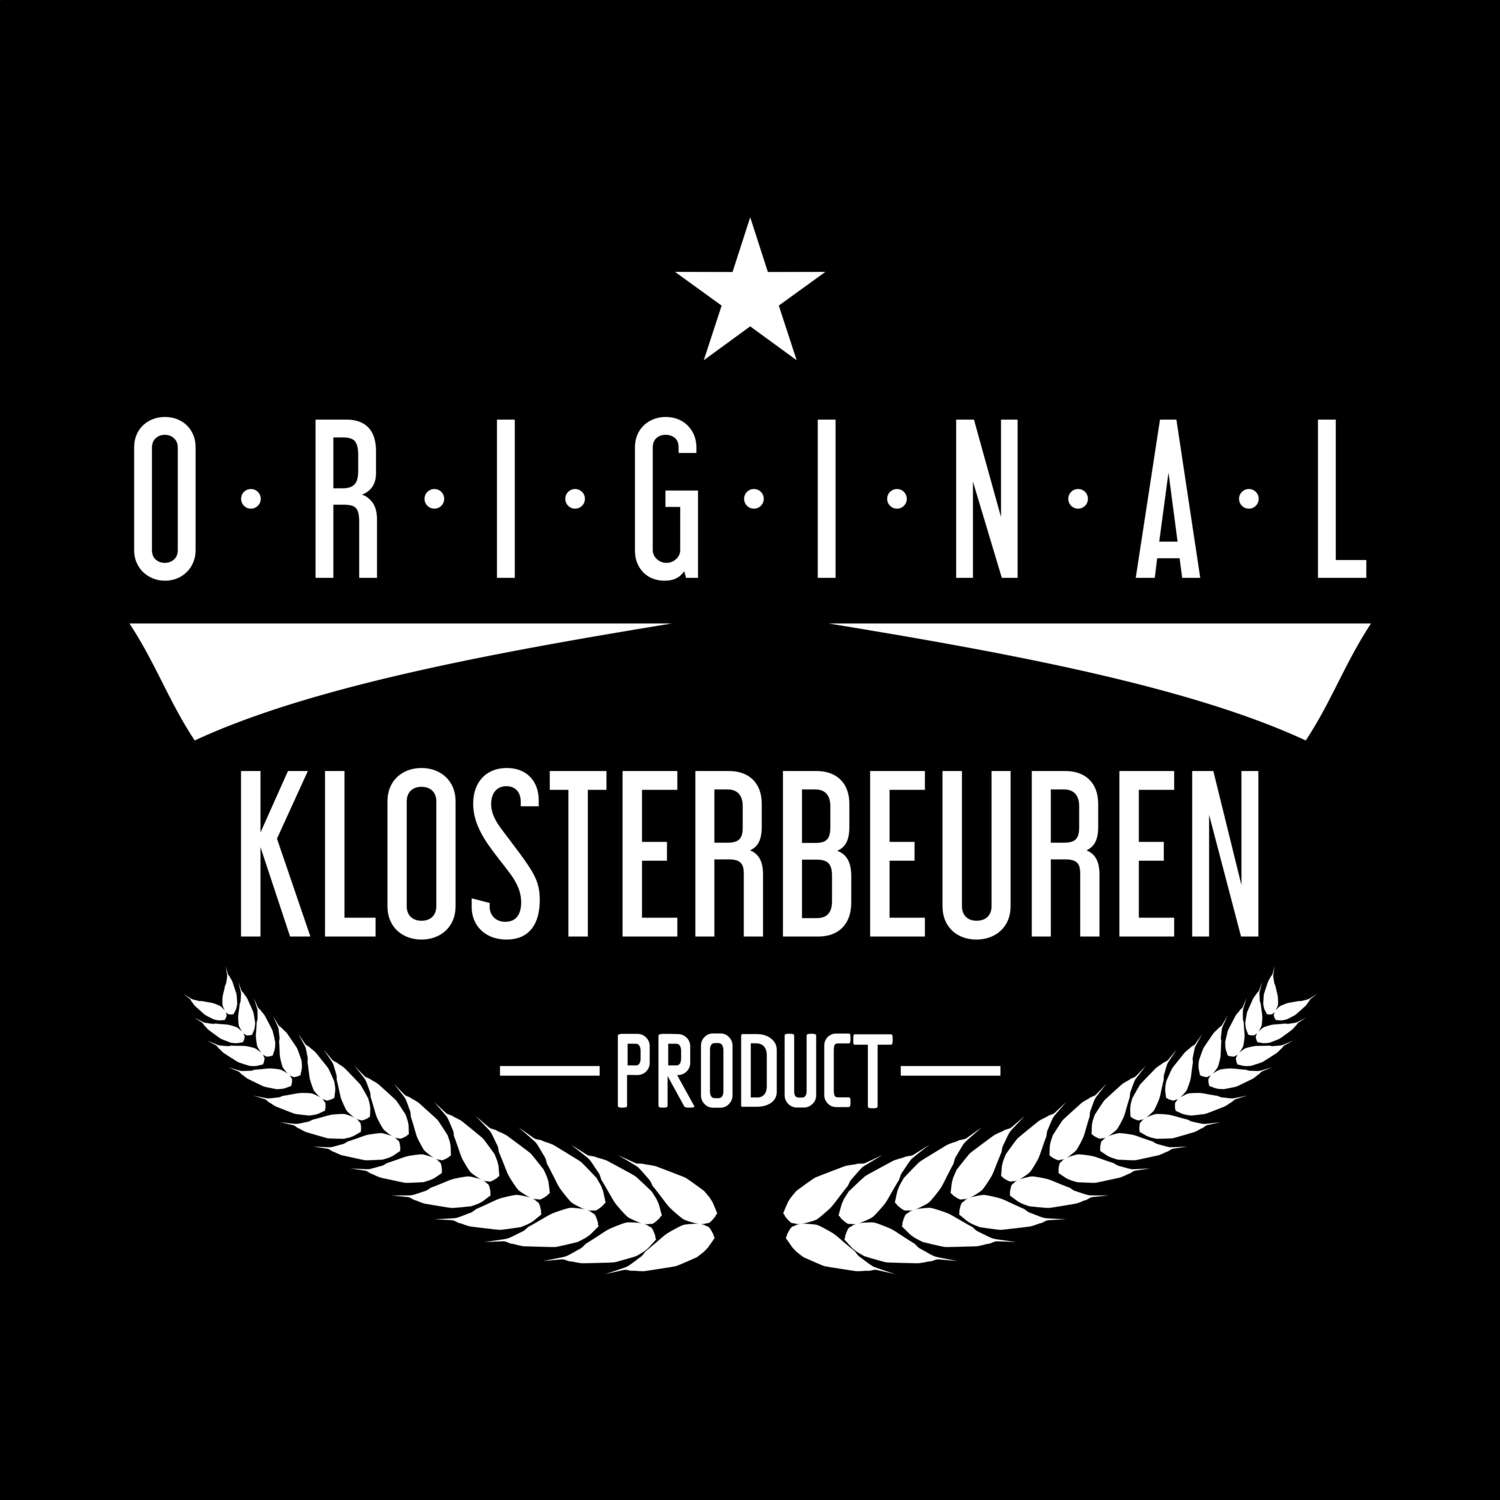 Klosterbeuren T-Shirt »Original Product«